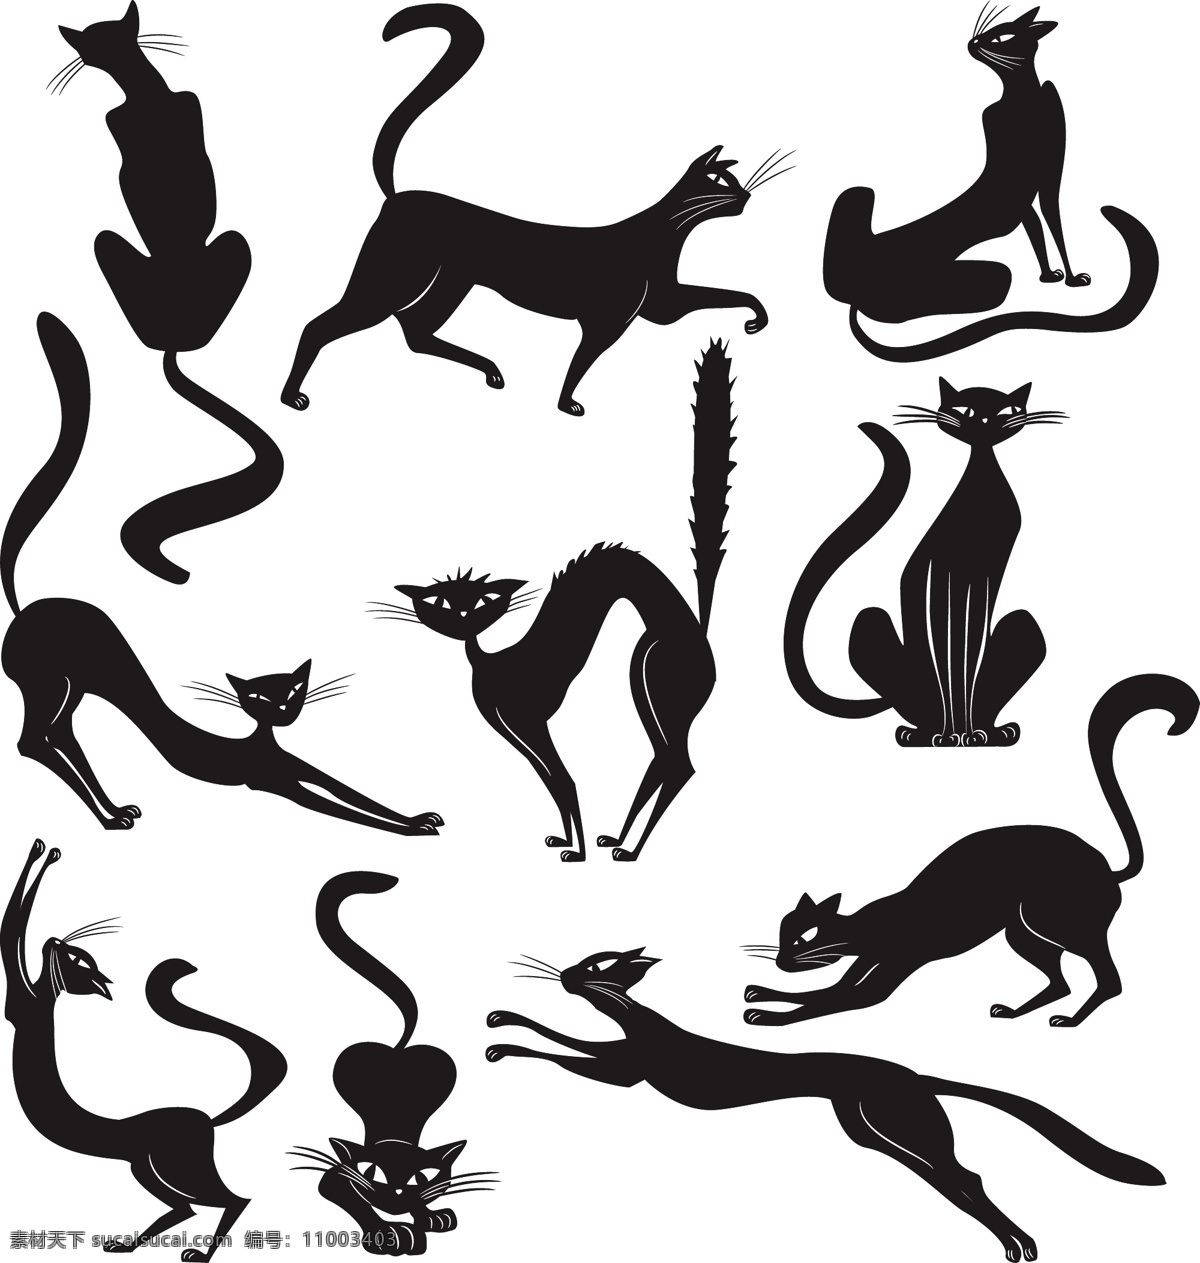 黑猫剪影 猫 剪影 平面 矢量图 生物世界 家禽家畜